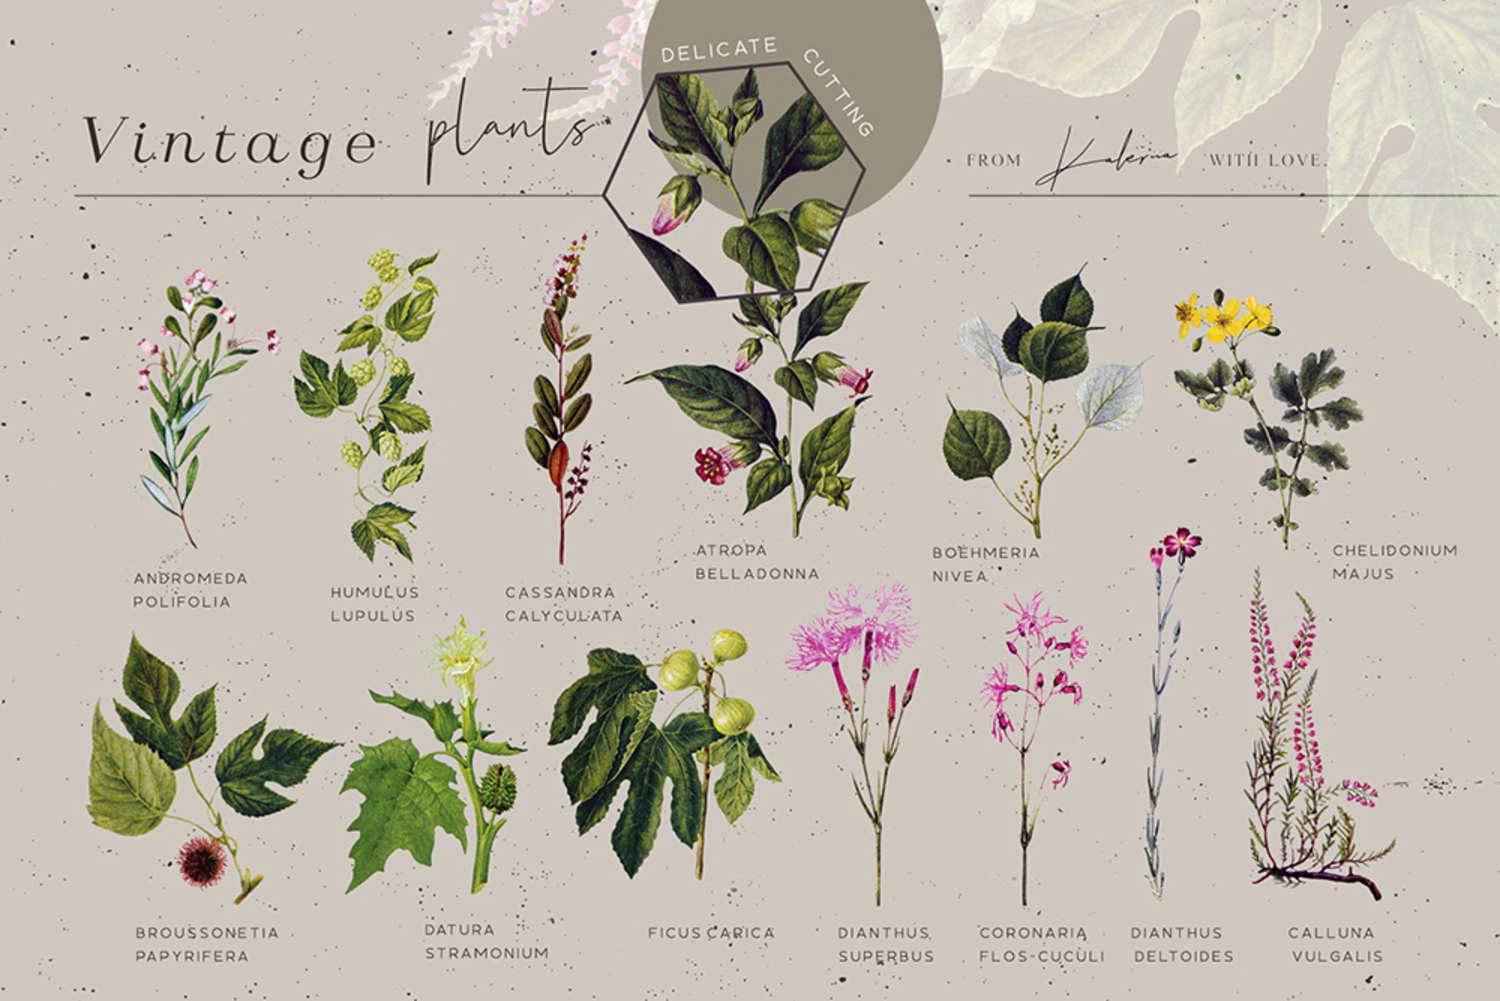 5539 复古植物手绘插画套装 叶子花卉设计元素素材